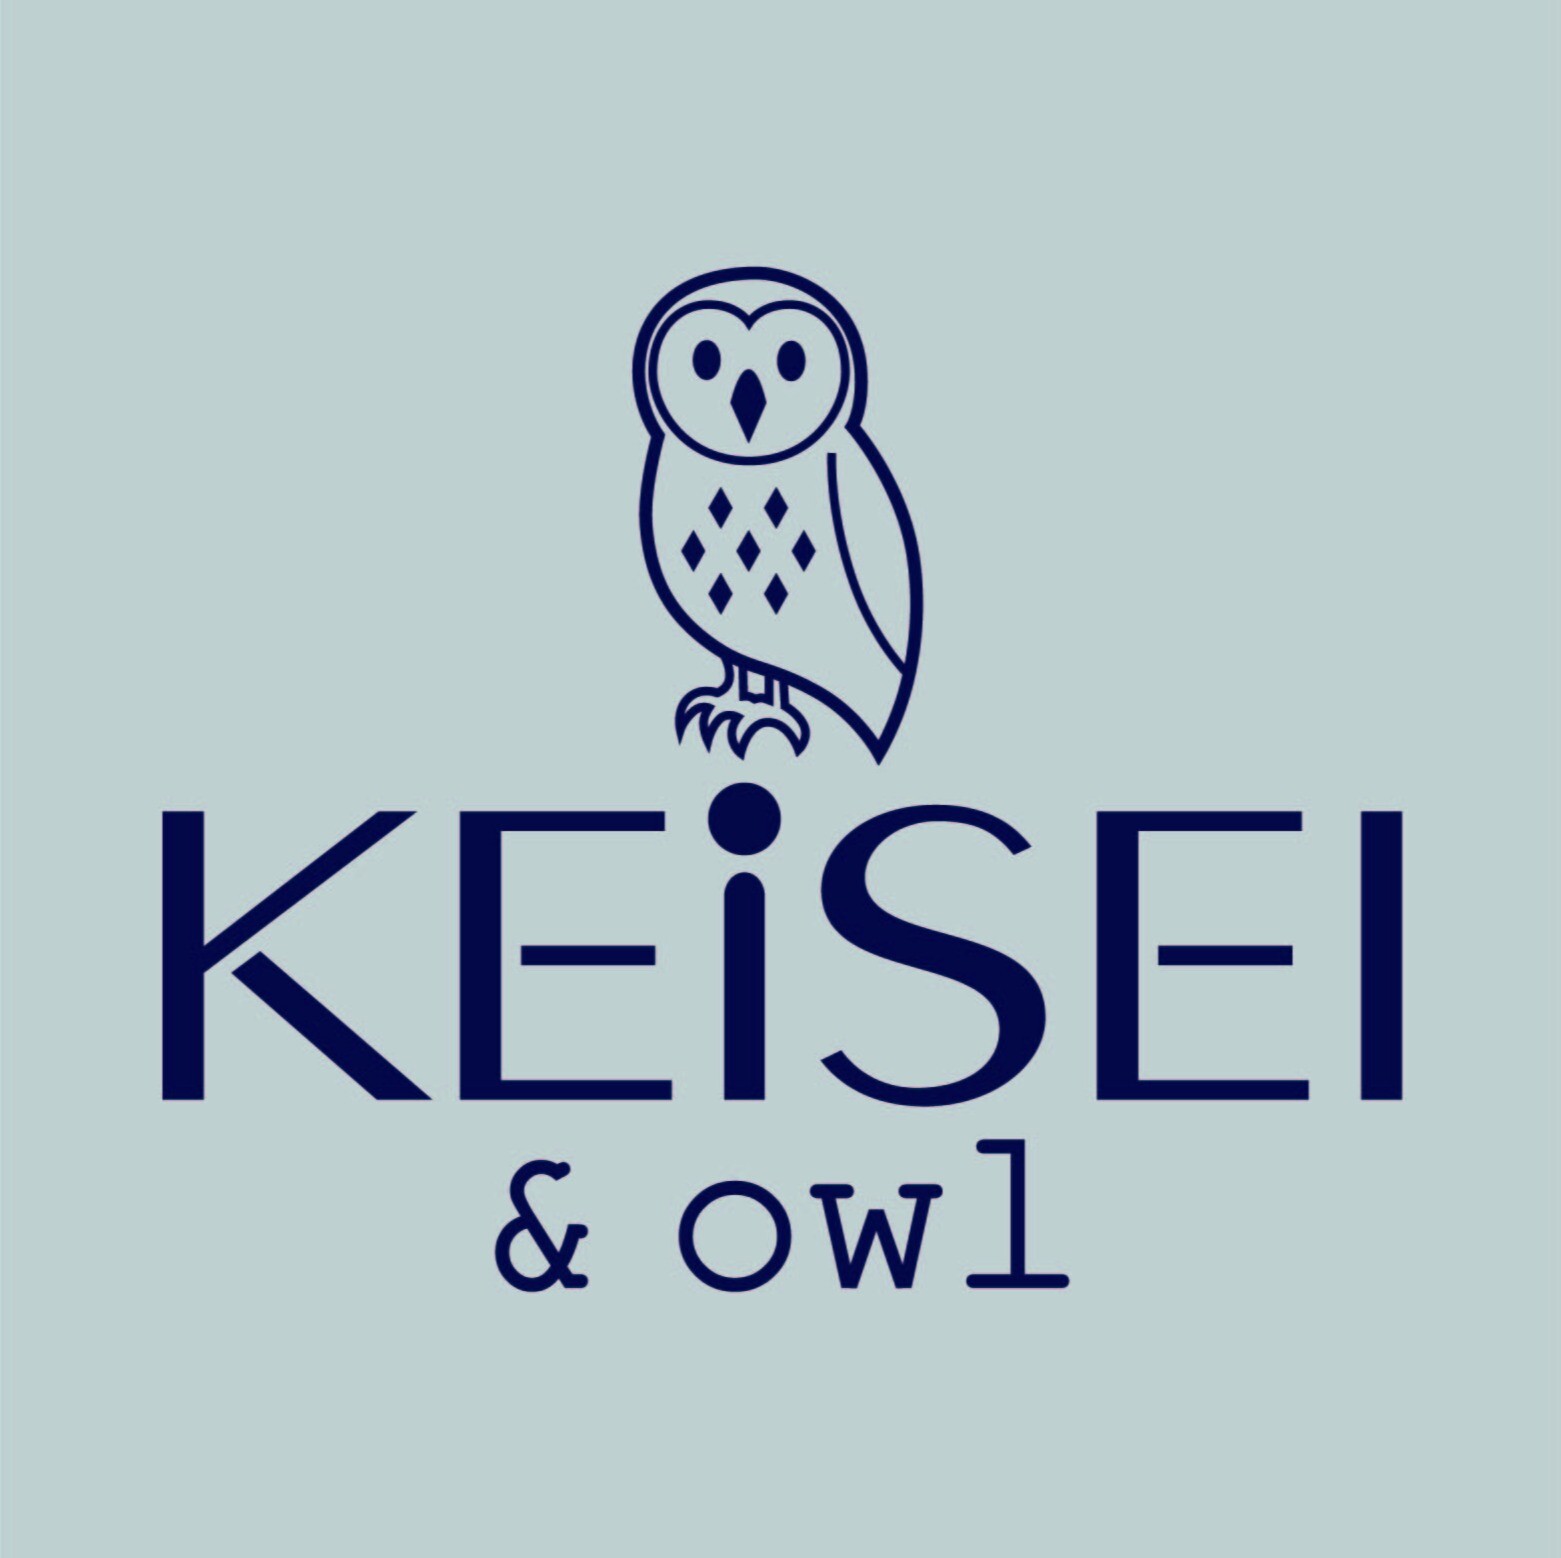 KEiSEI & owl